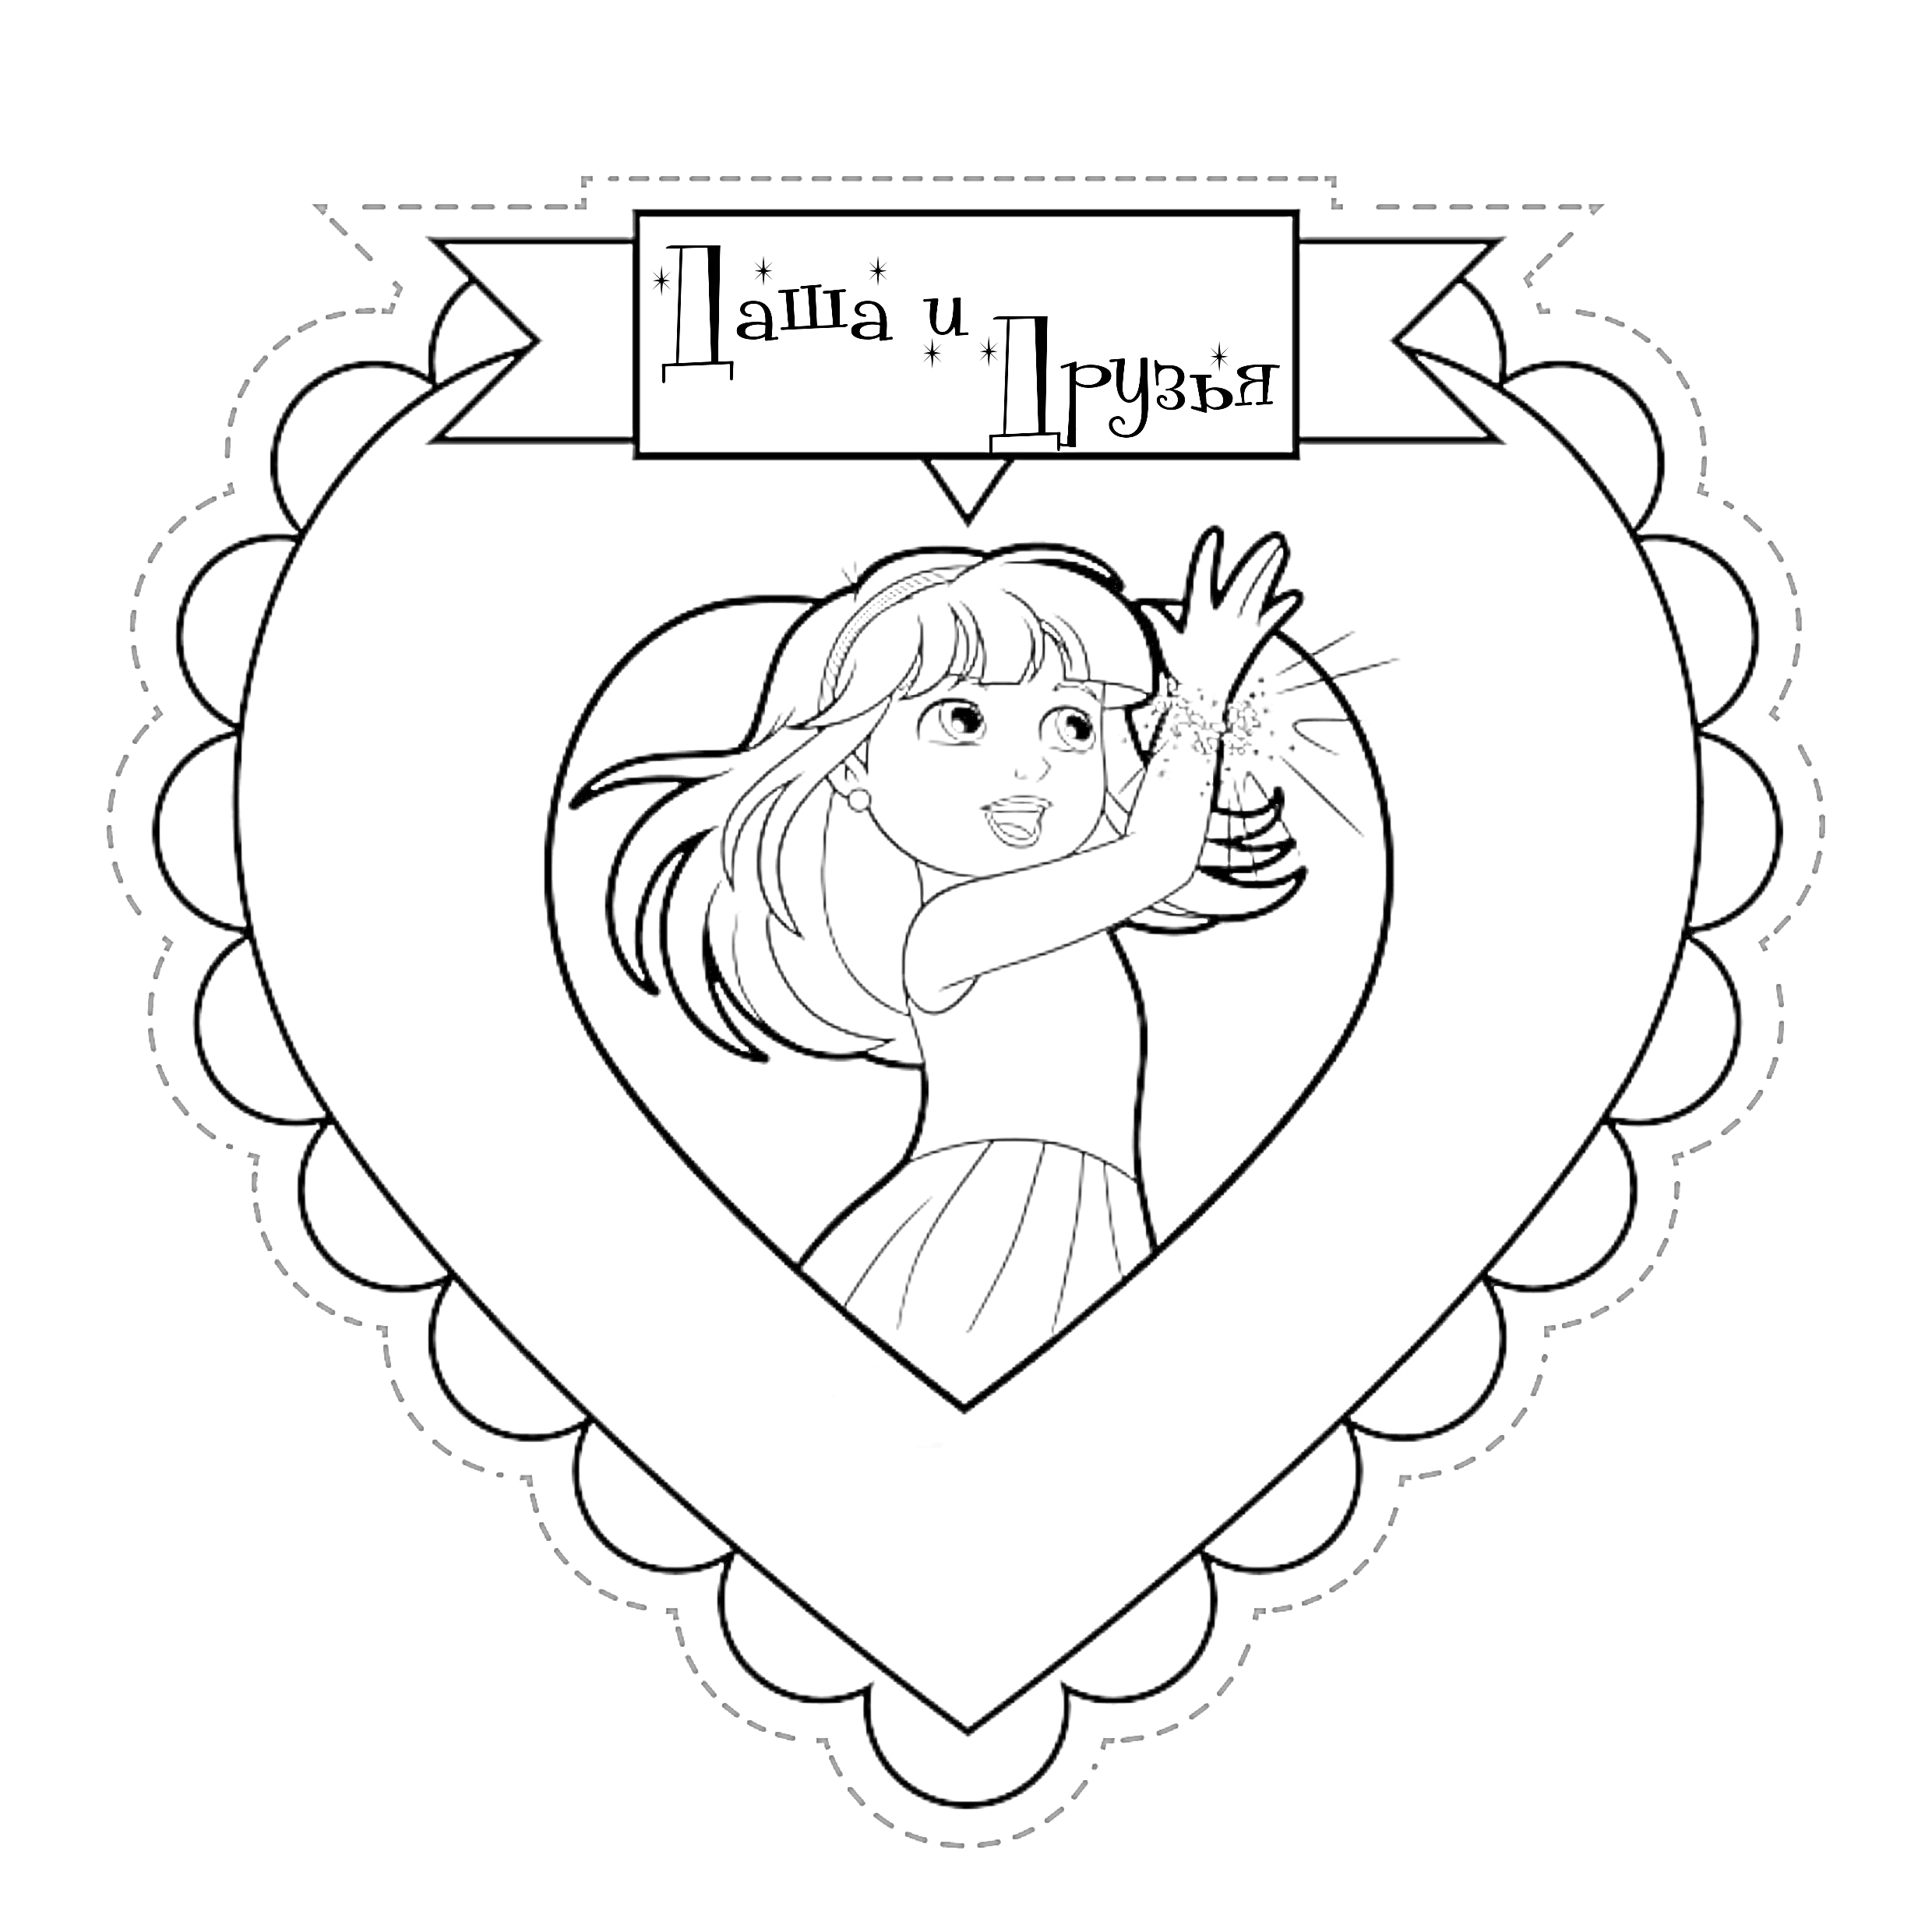 Девочка с длинными волосами в платье машет рукой внутри сердечка с каймой и надписью 